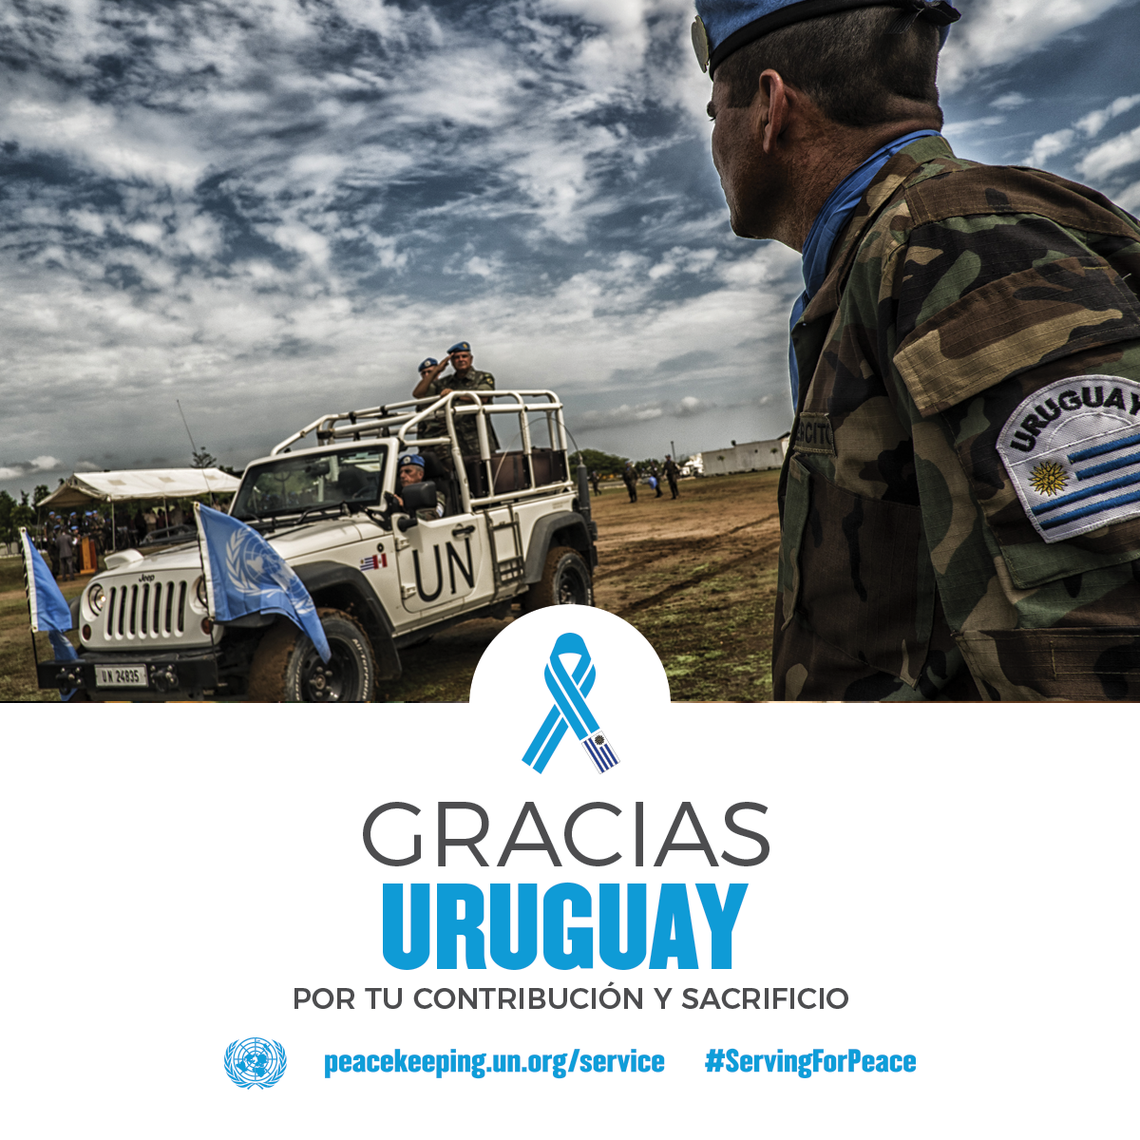 Gracias Uruguay